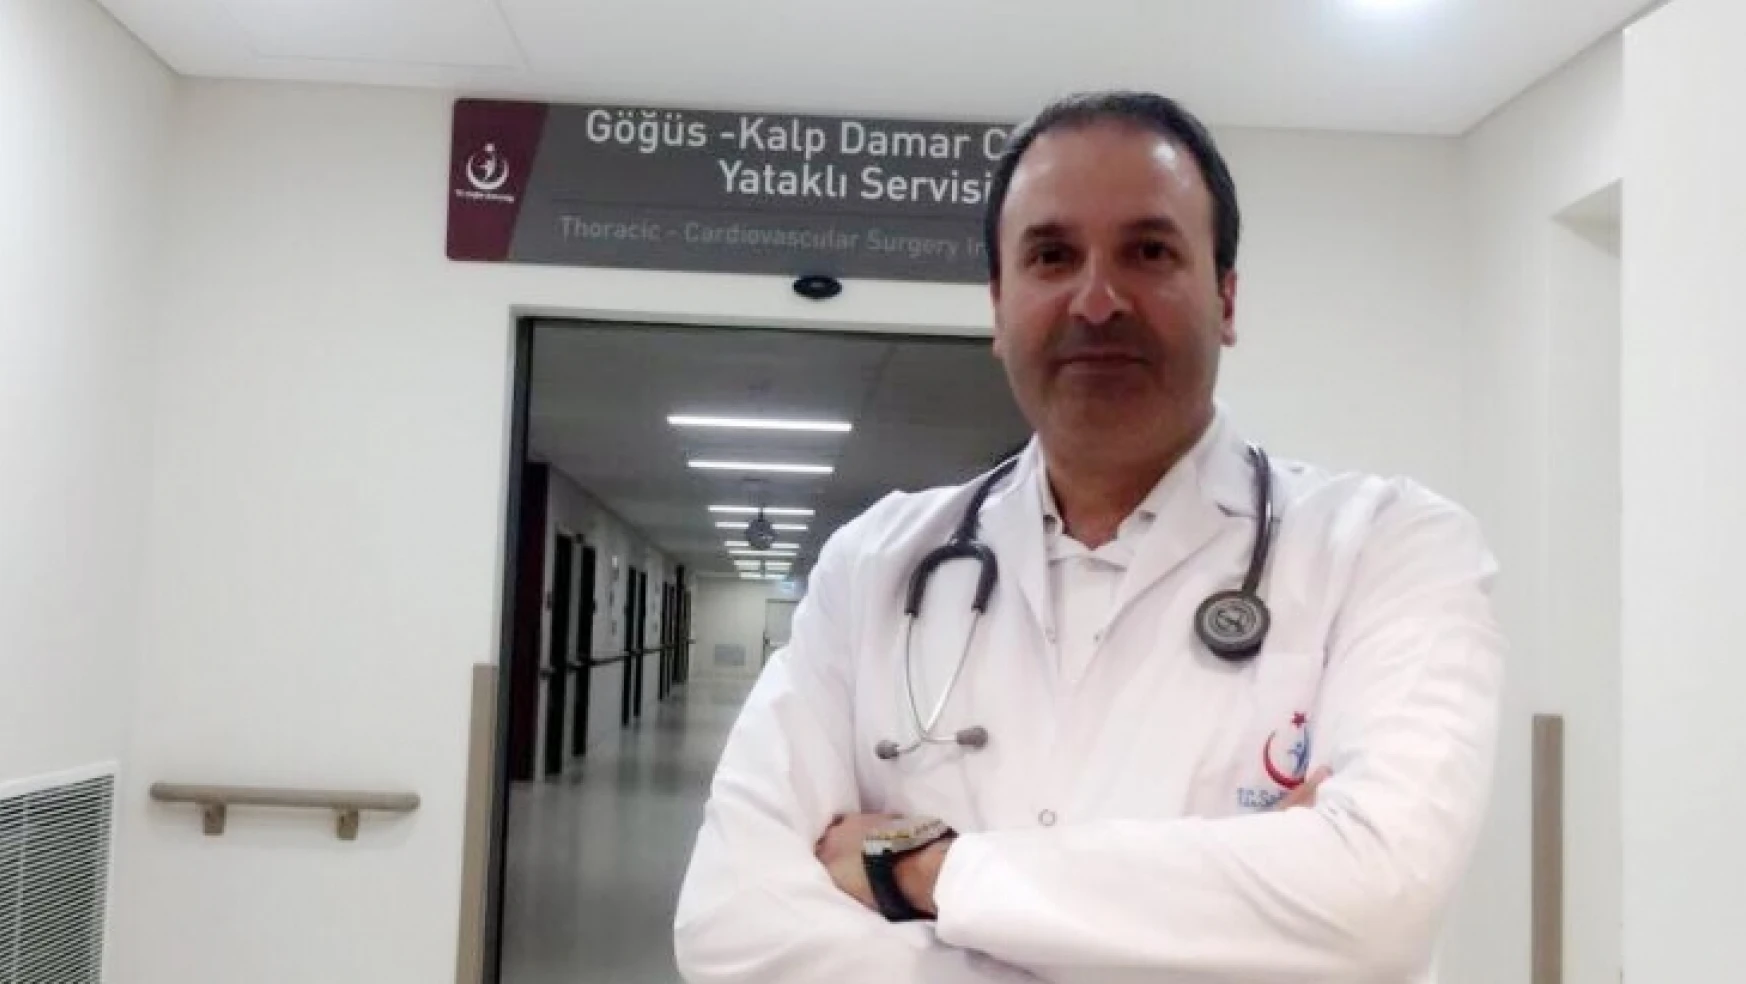 Elazığ Şehir Hastanesinde El ve Koltuk Altı Terlemesine Ameliyatlı Çözüm